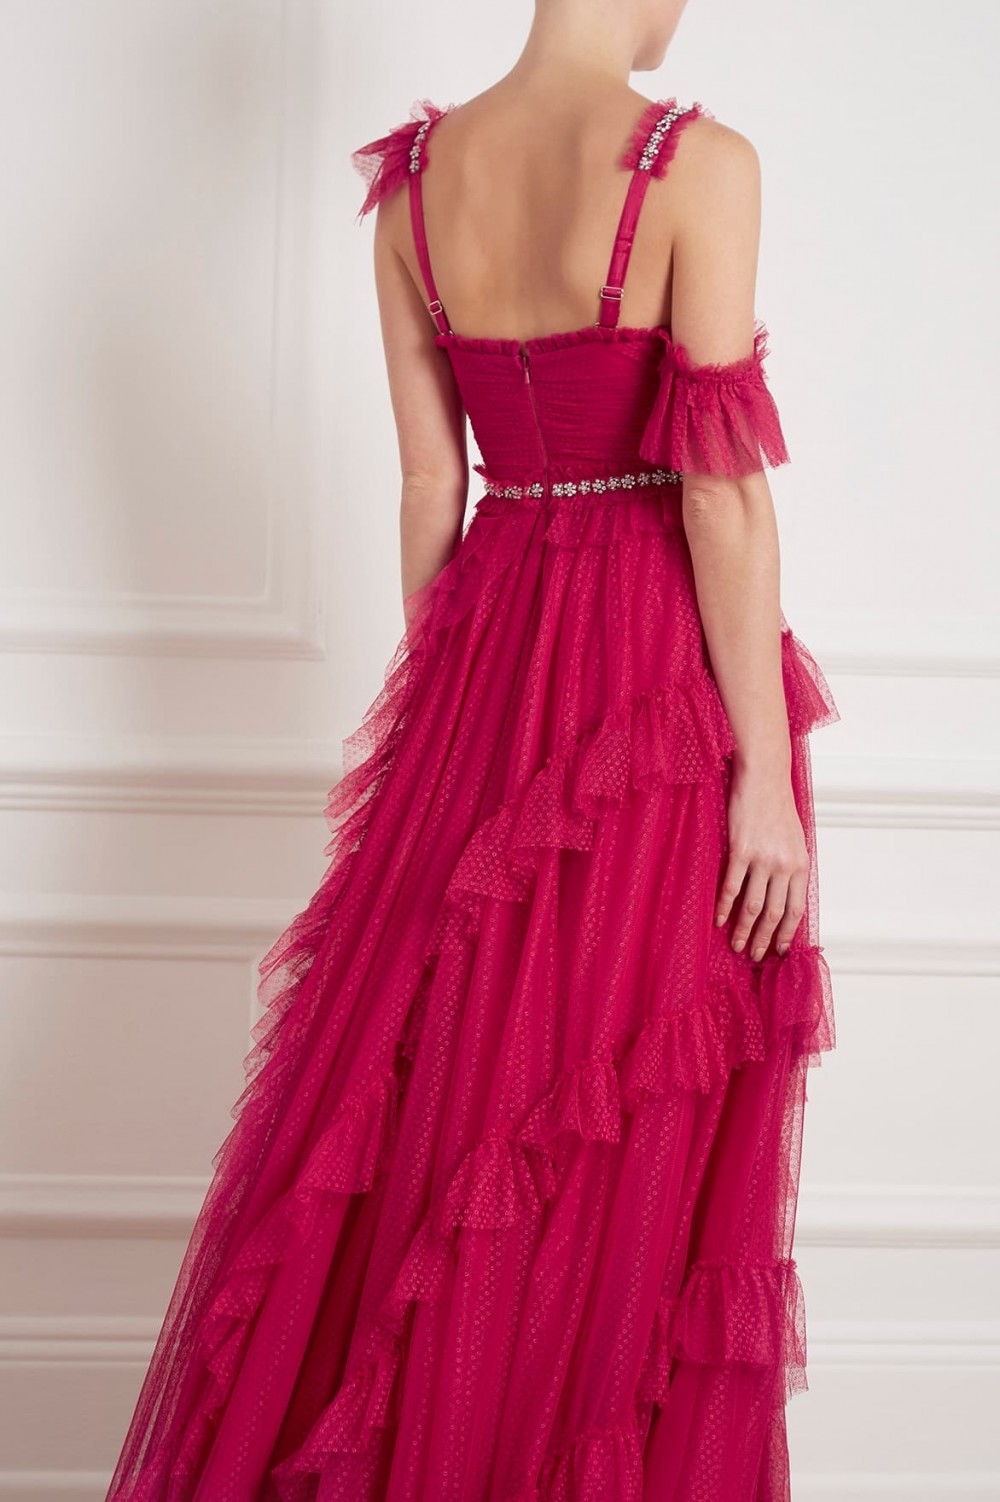 Needle & Thread Degas fuscia pink gown